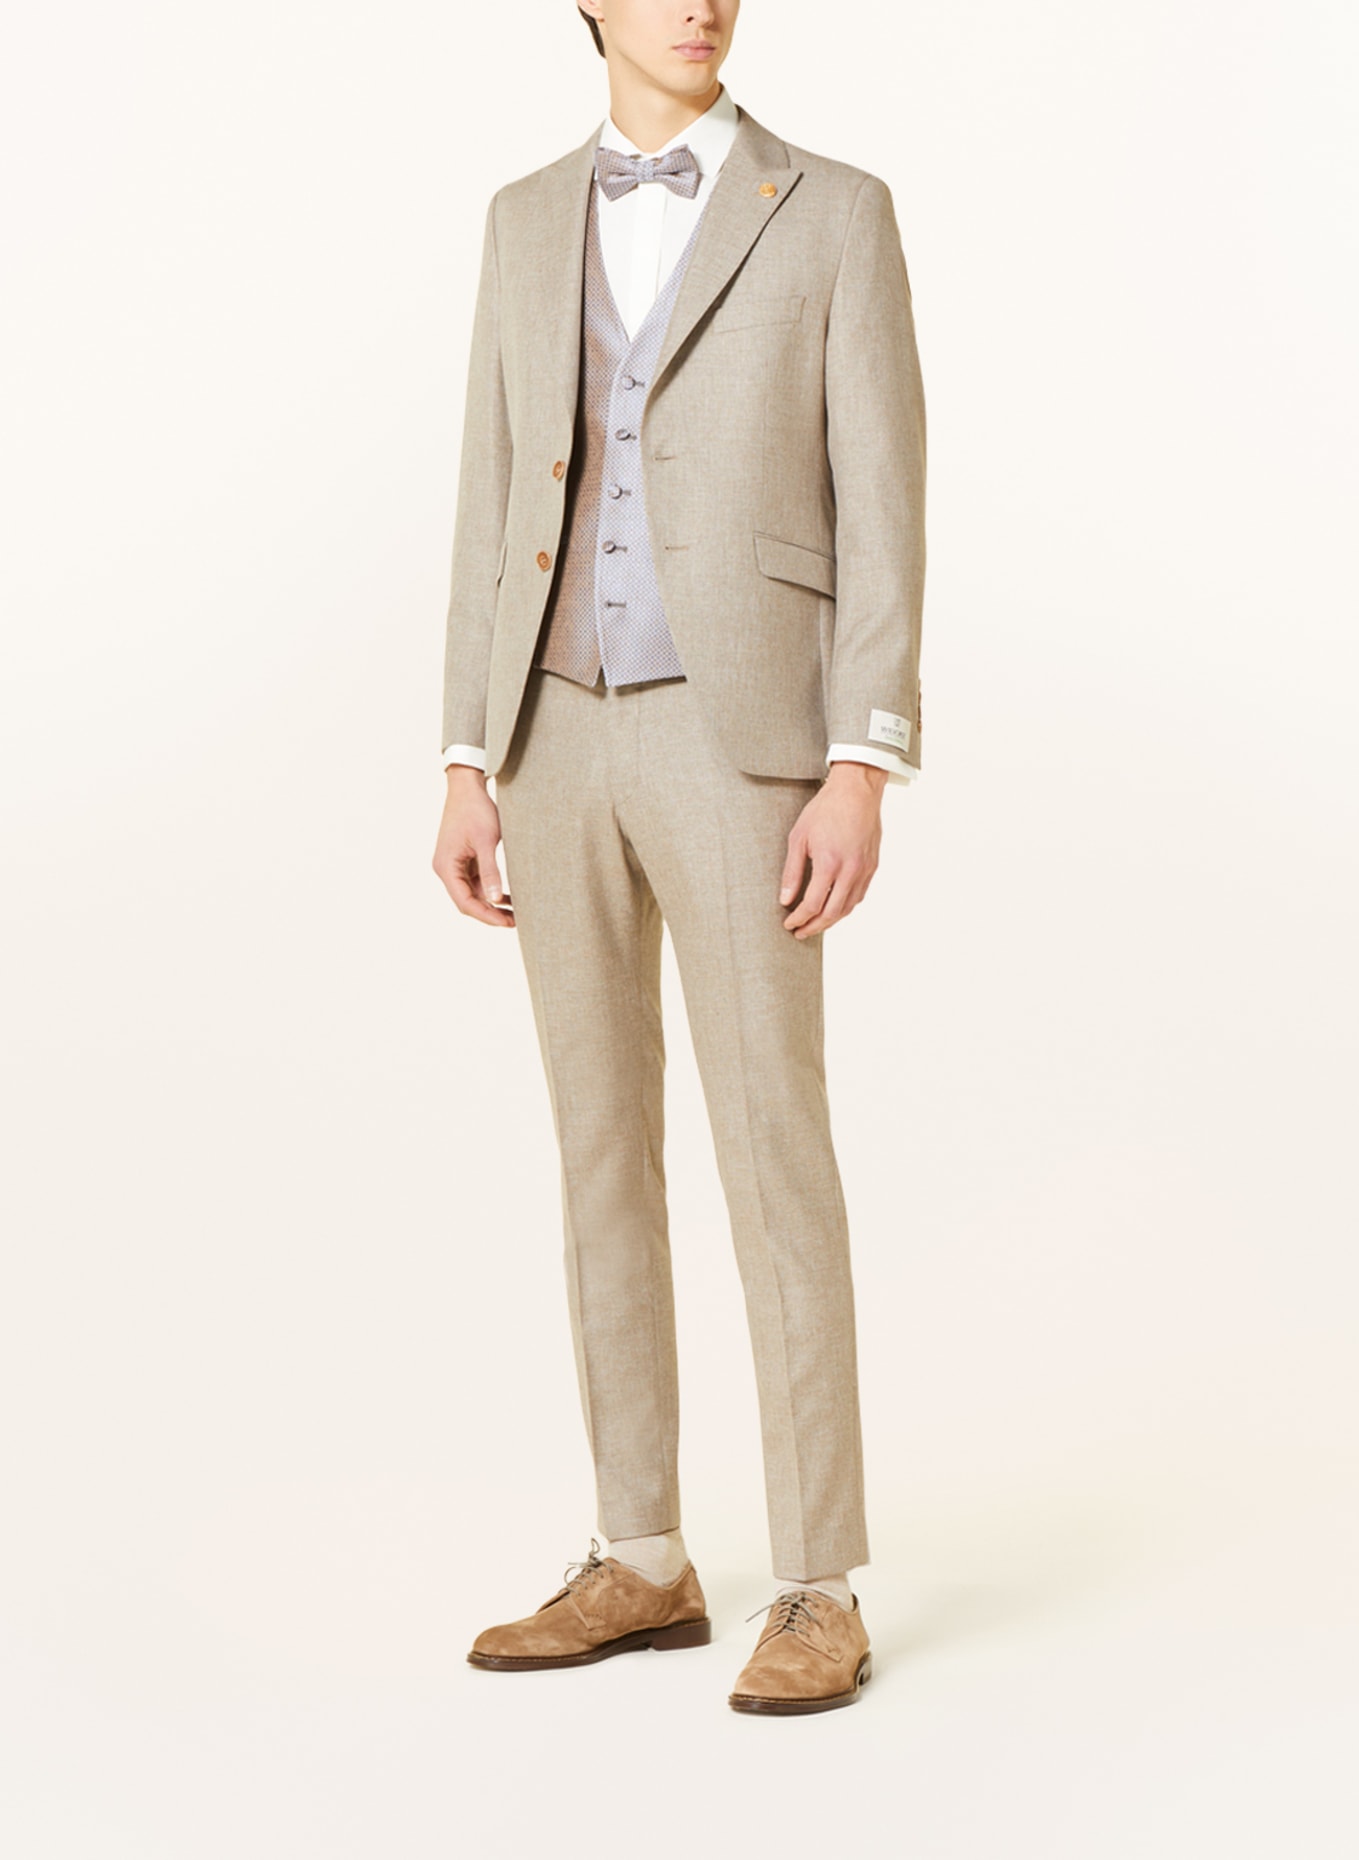 WILVORST Suit jacket extra slim fit, Color: BEIGE (Image 3)